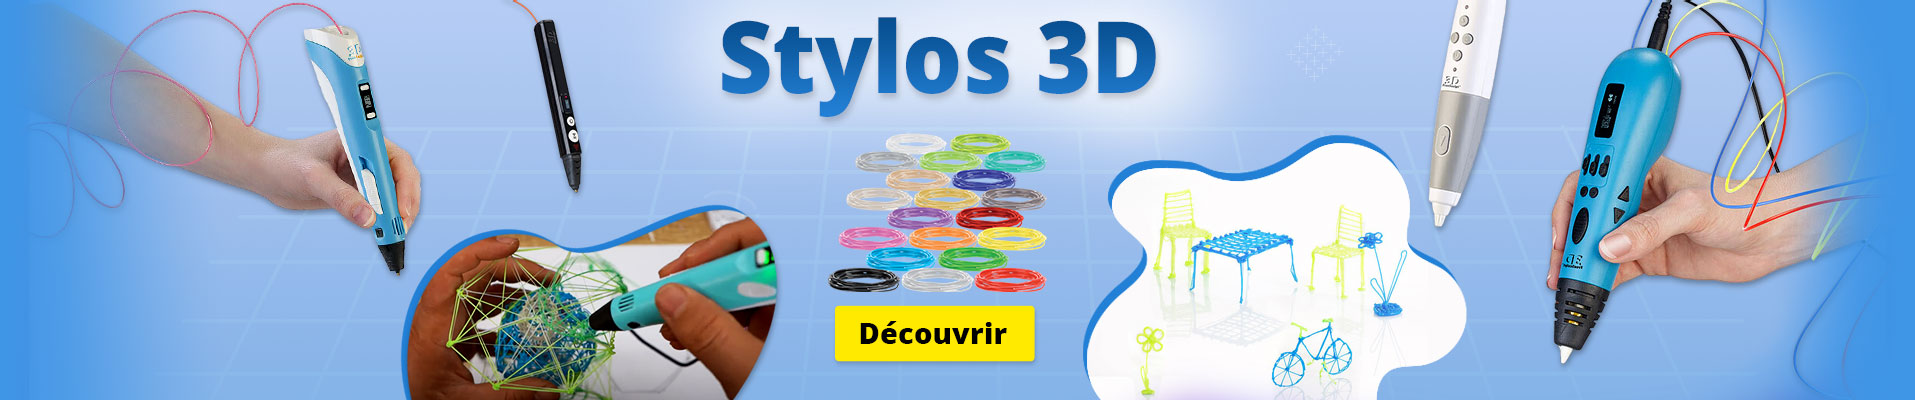 Stylos 3D